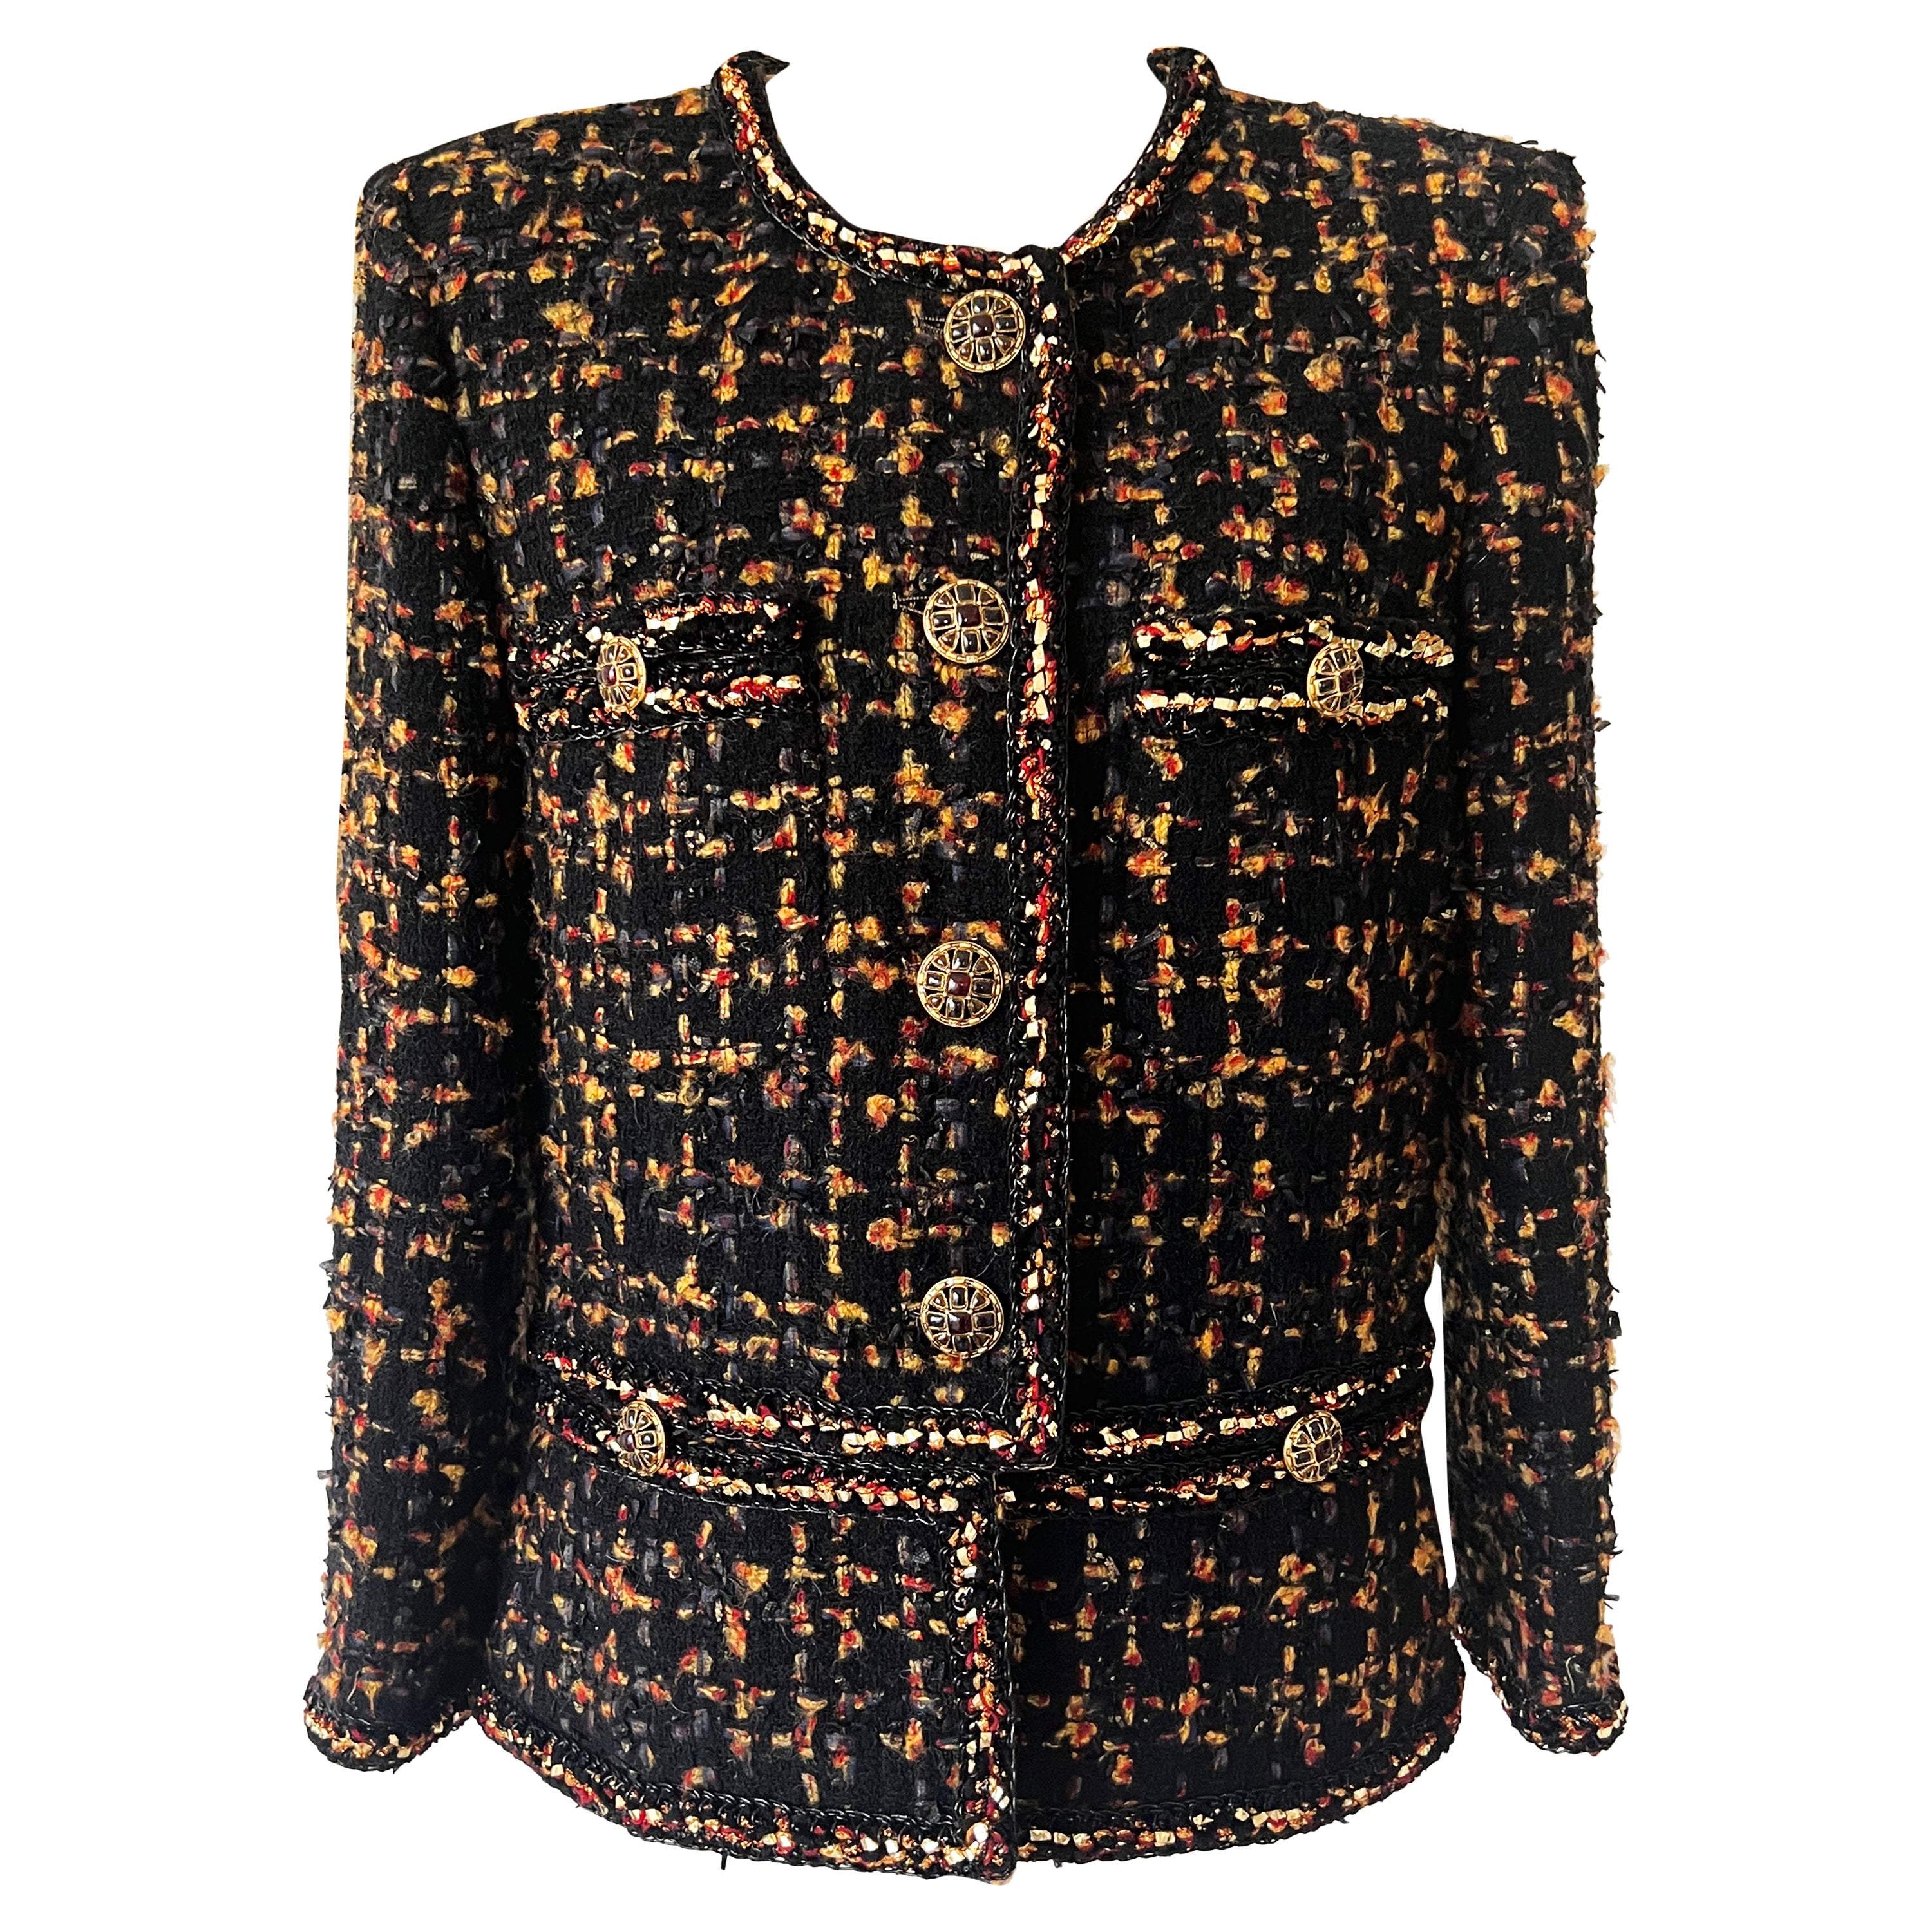 Chanel brown tweed jacket - Gem